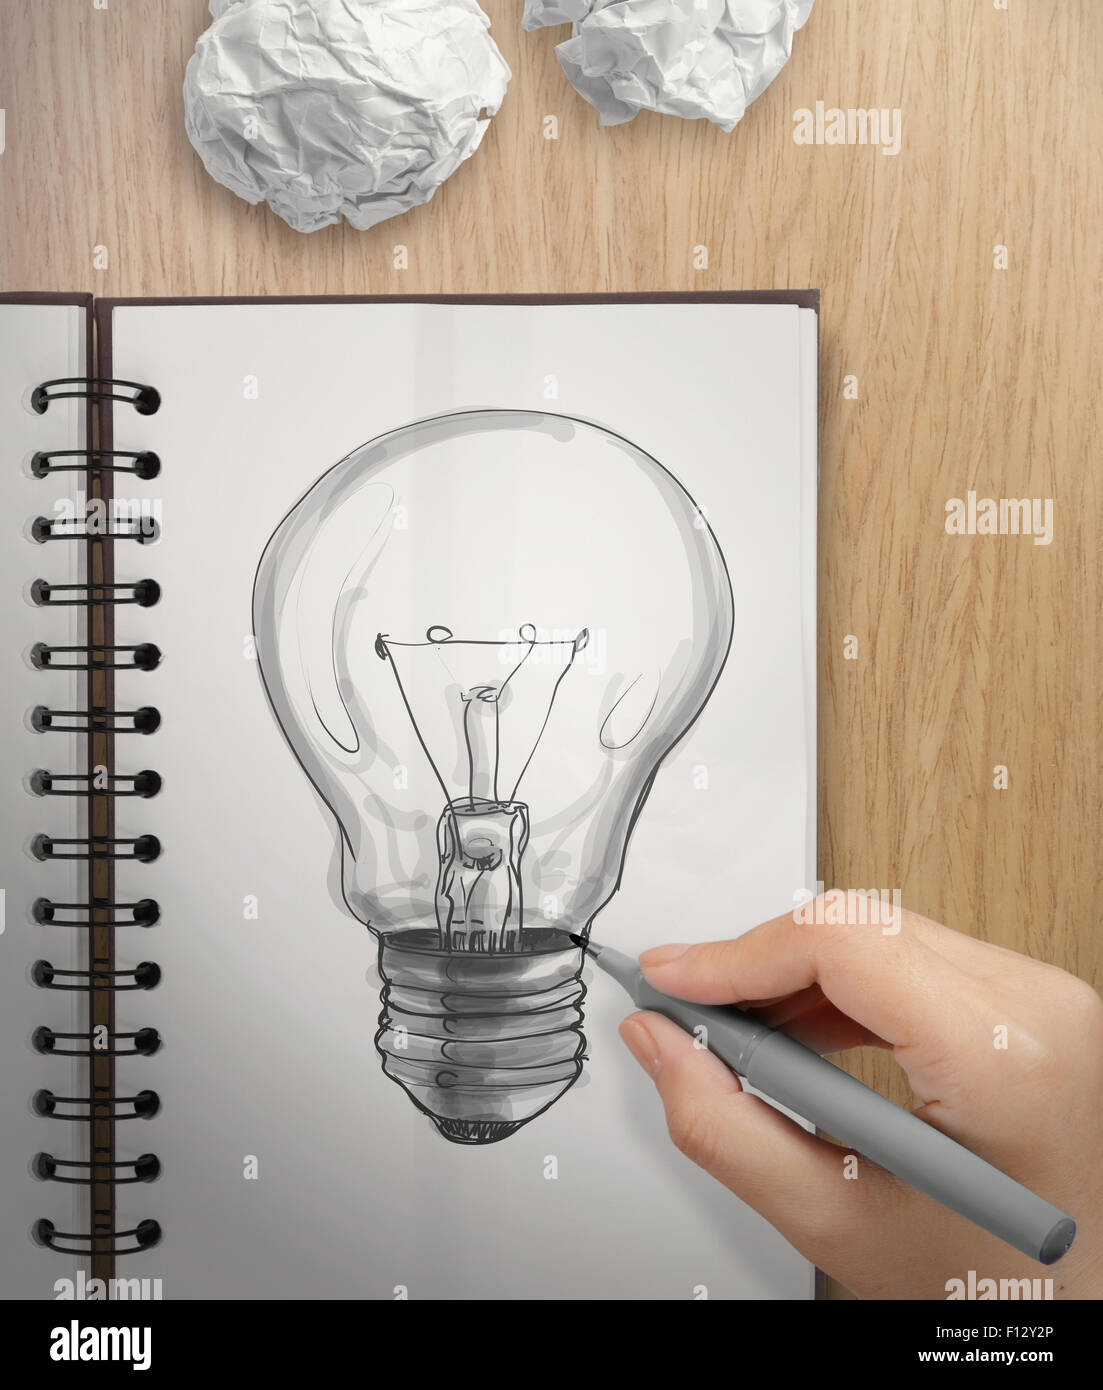 La main avec un stylo dessin Light bulb on remarque livre comme concept Banque D'Images